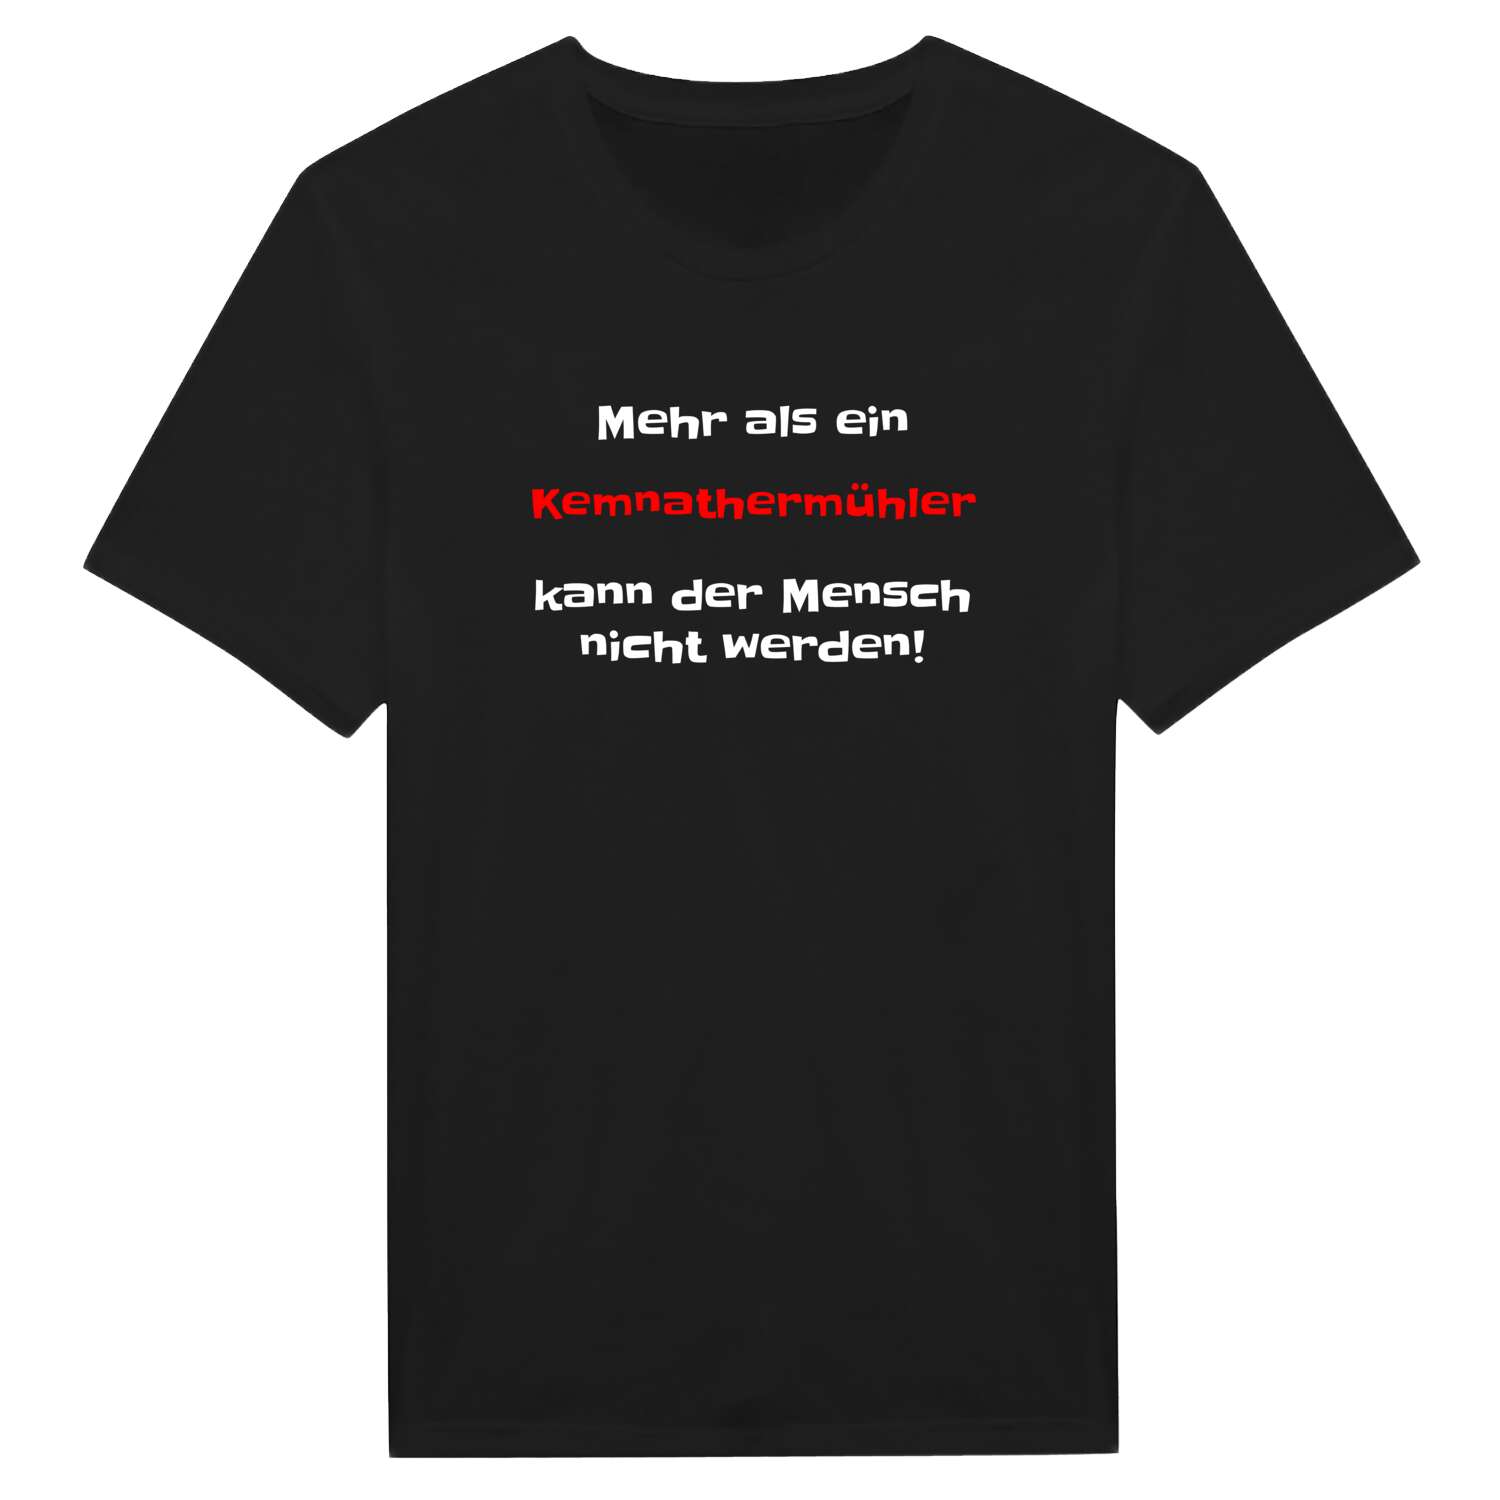 Kemnathermühl T-Shirt »Mehr als ein«